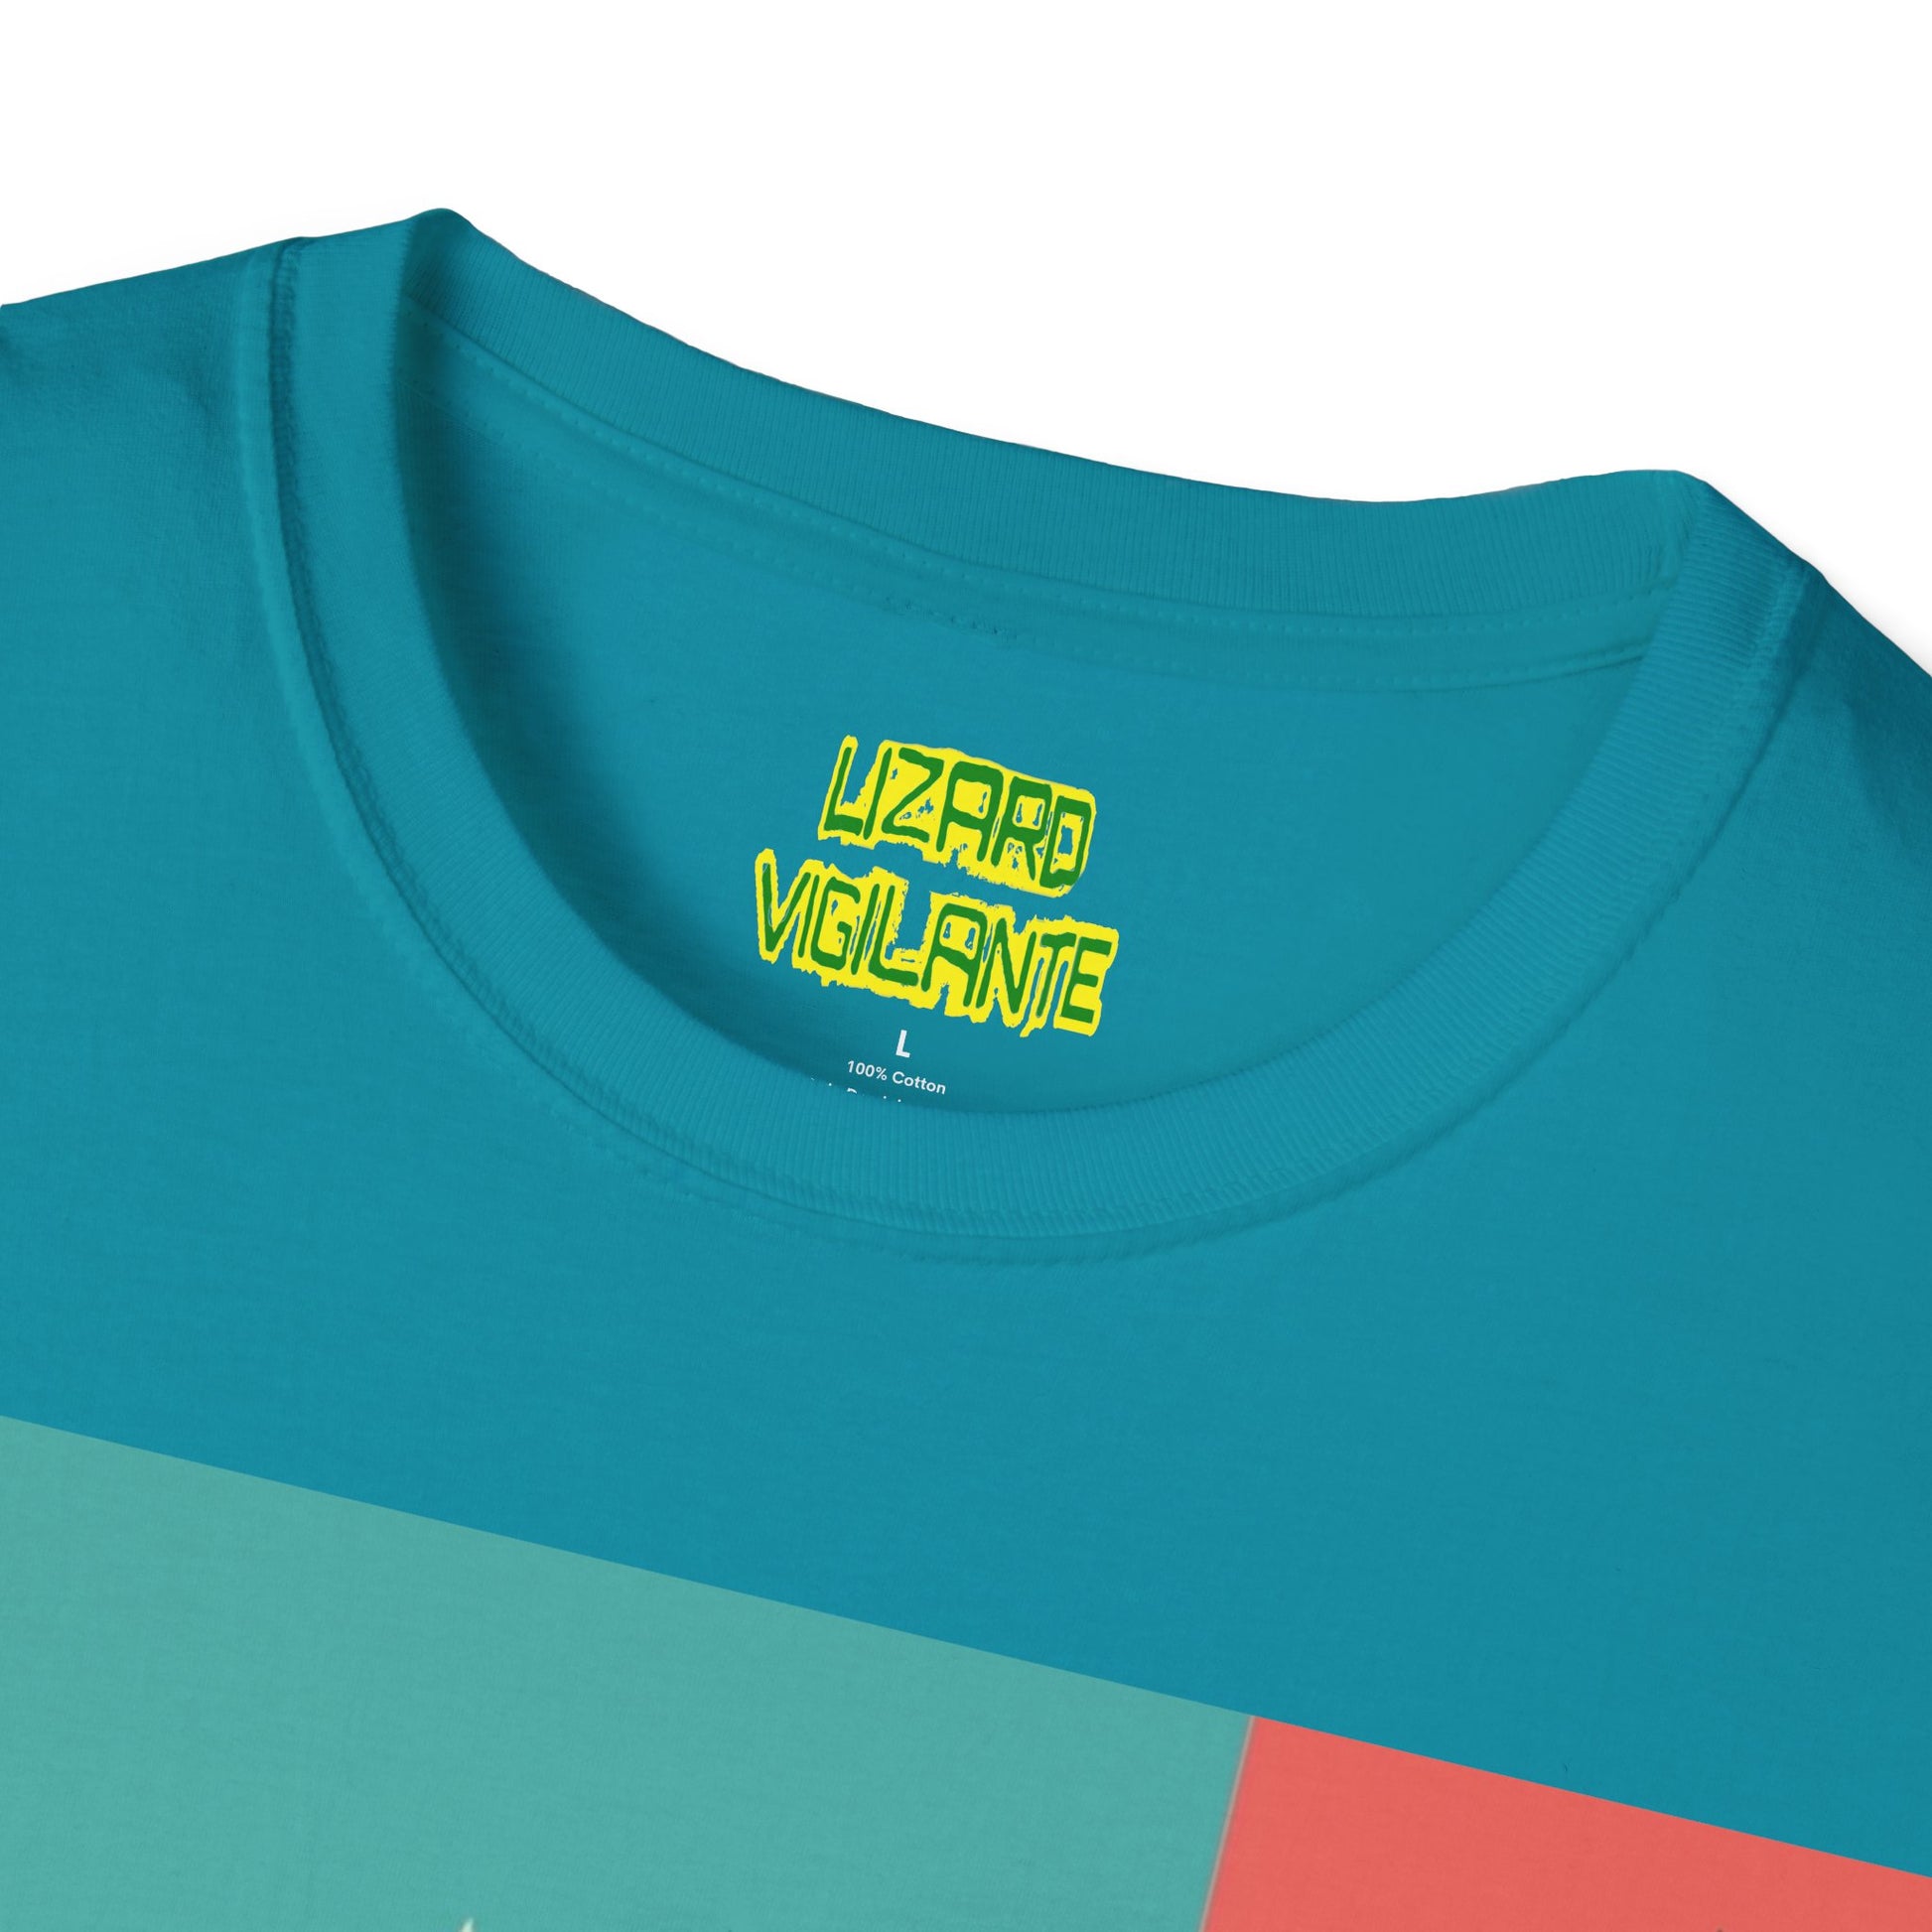 Rock Dudes Unisex Softstyle T-Shirt - Lizard Vigilante